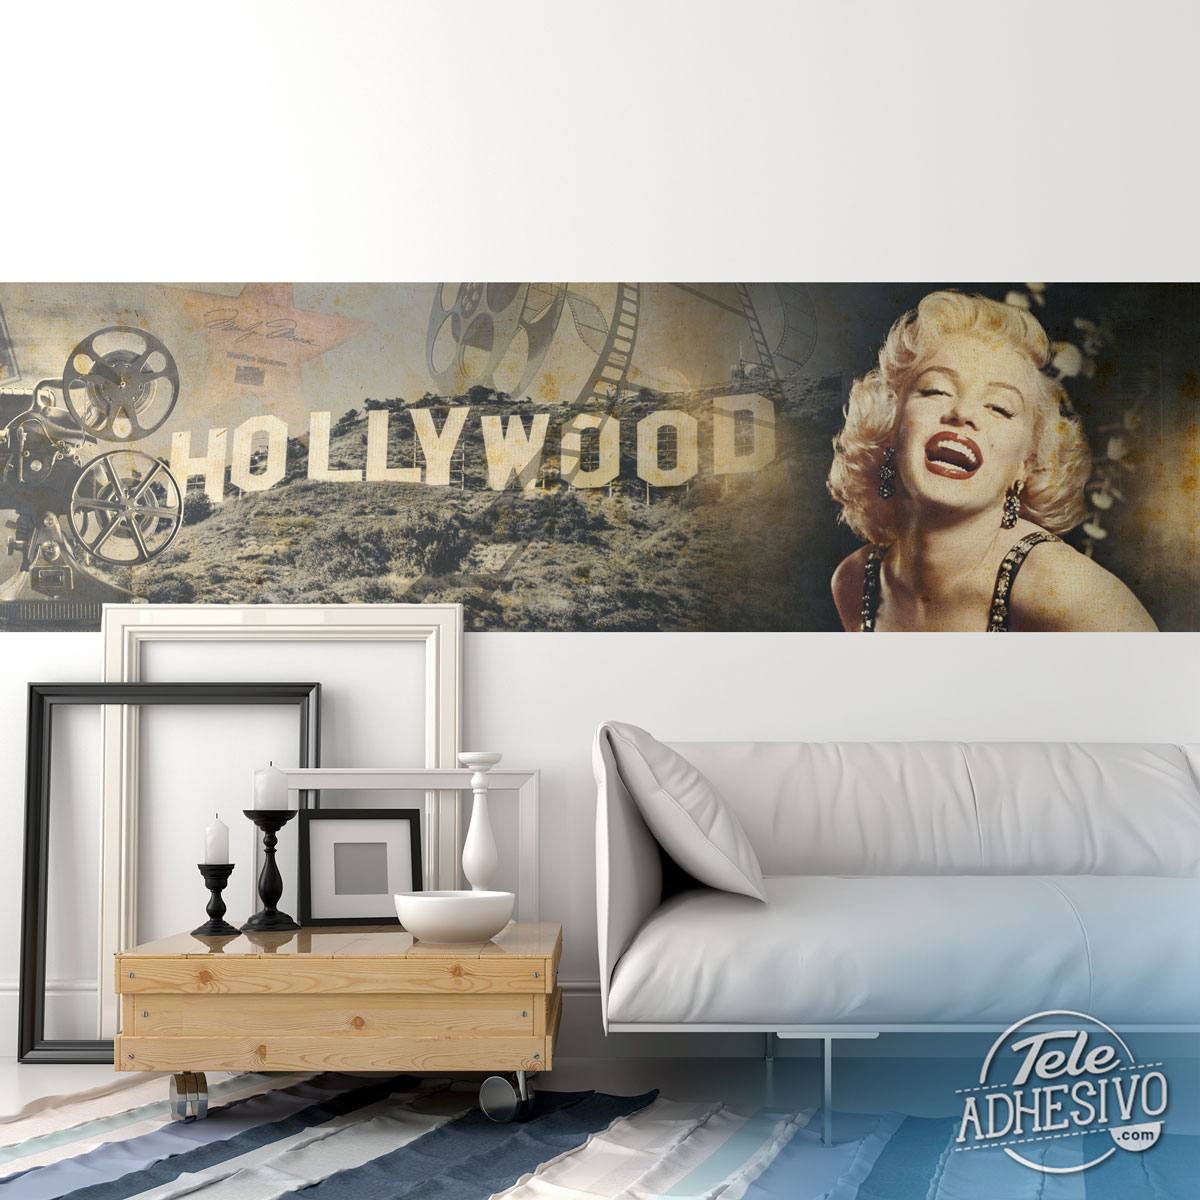 Poster xxl: Hollywood et Marilyn